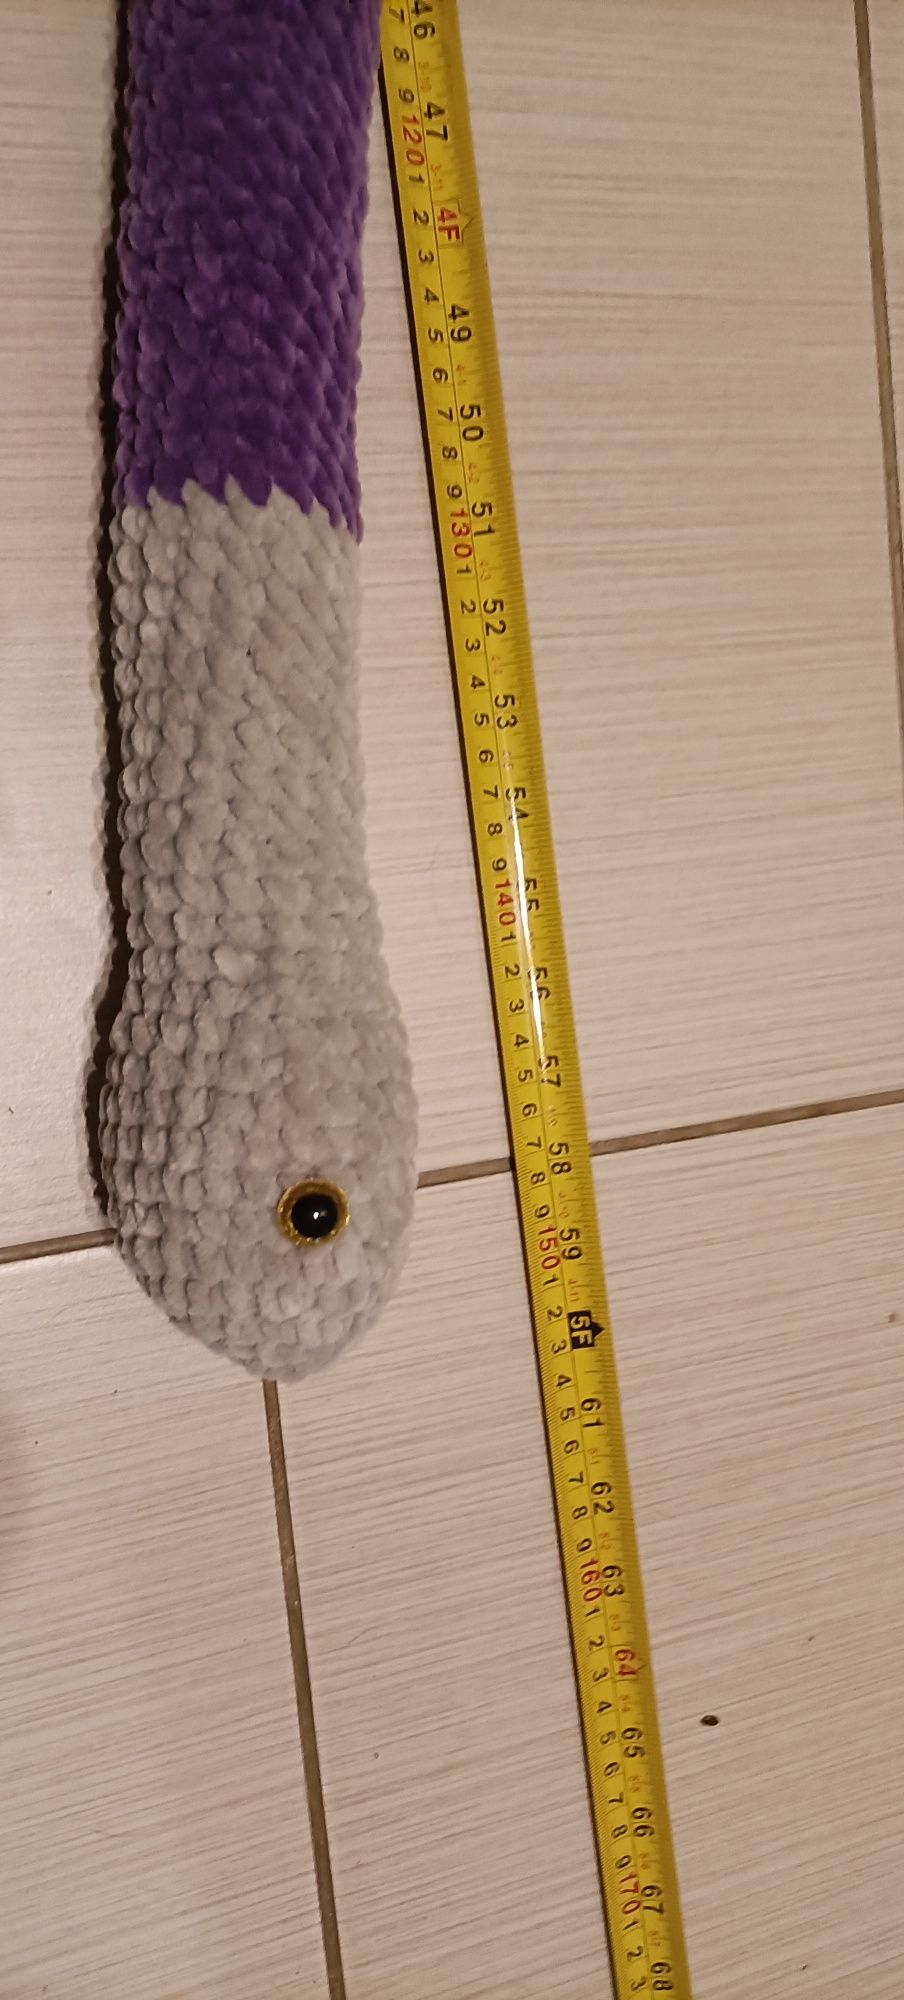 Wąż na szydełku 150cm